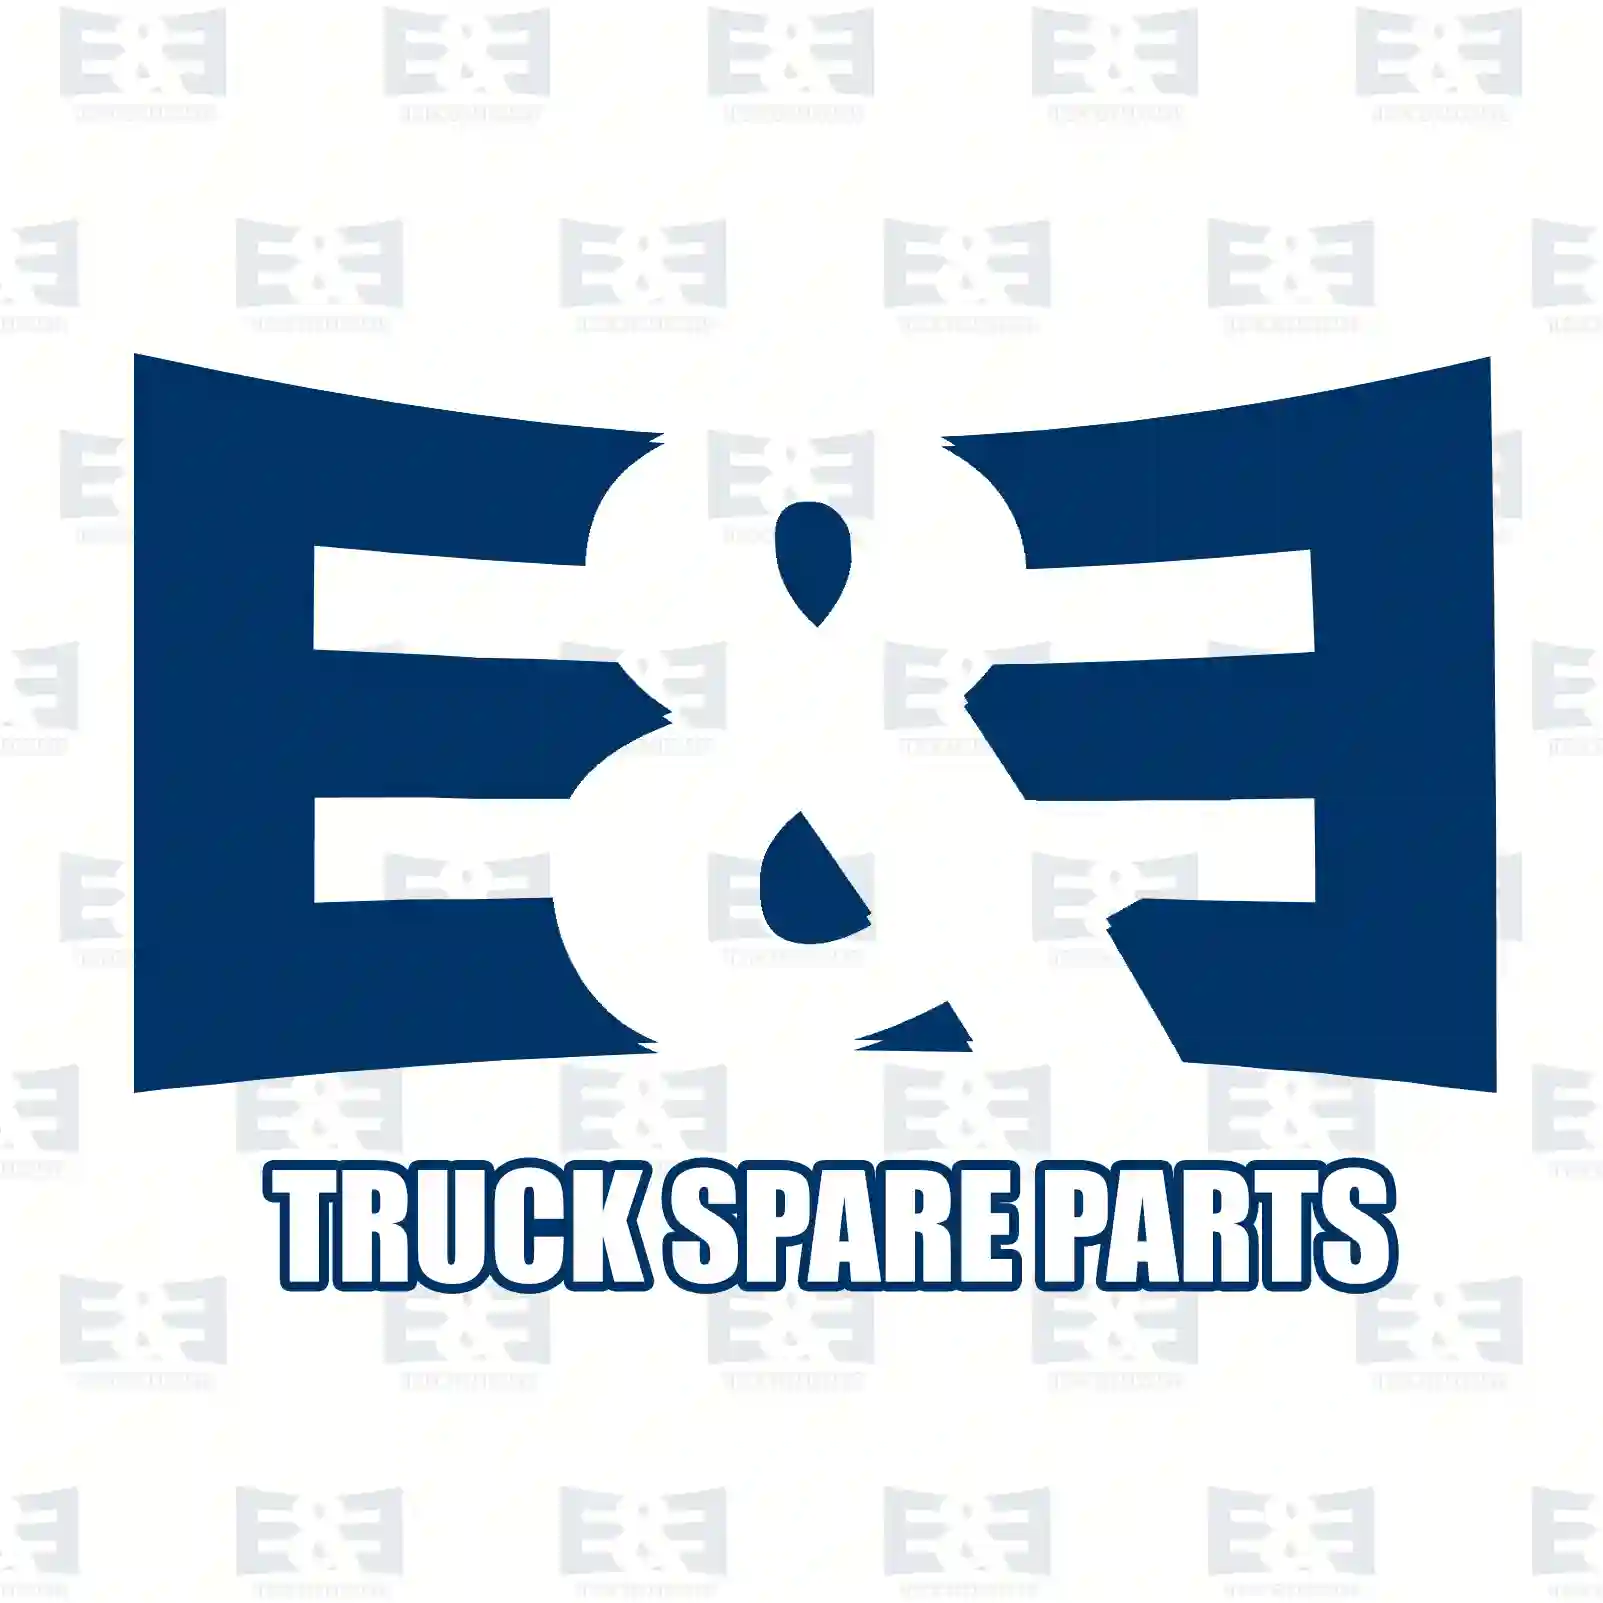 Clutch kit, 2E2288984, #YOK ||  2E2288984 E&E Truck Spare Parts | Truck Spare Parts, Auotomotive Spare Parts Clutch kit, 2E2288984, #YOK ||  2E2288984 E&E Truck Spare Parts | Truck Spare Parts, Auotomotive Spare Parts